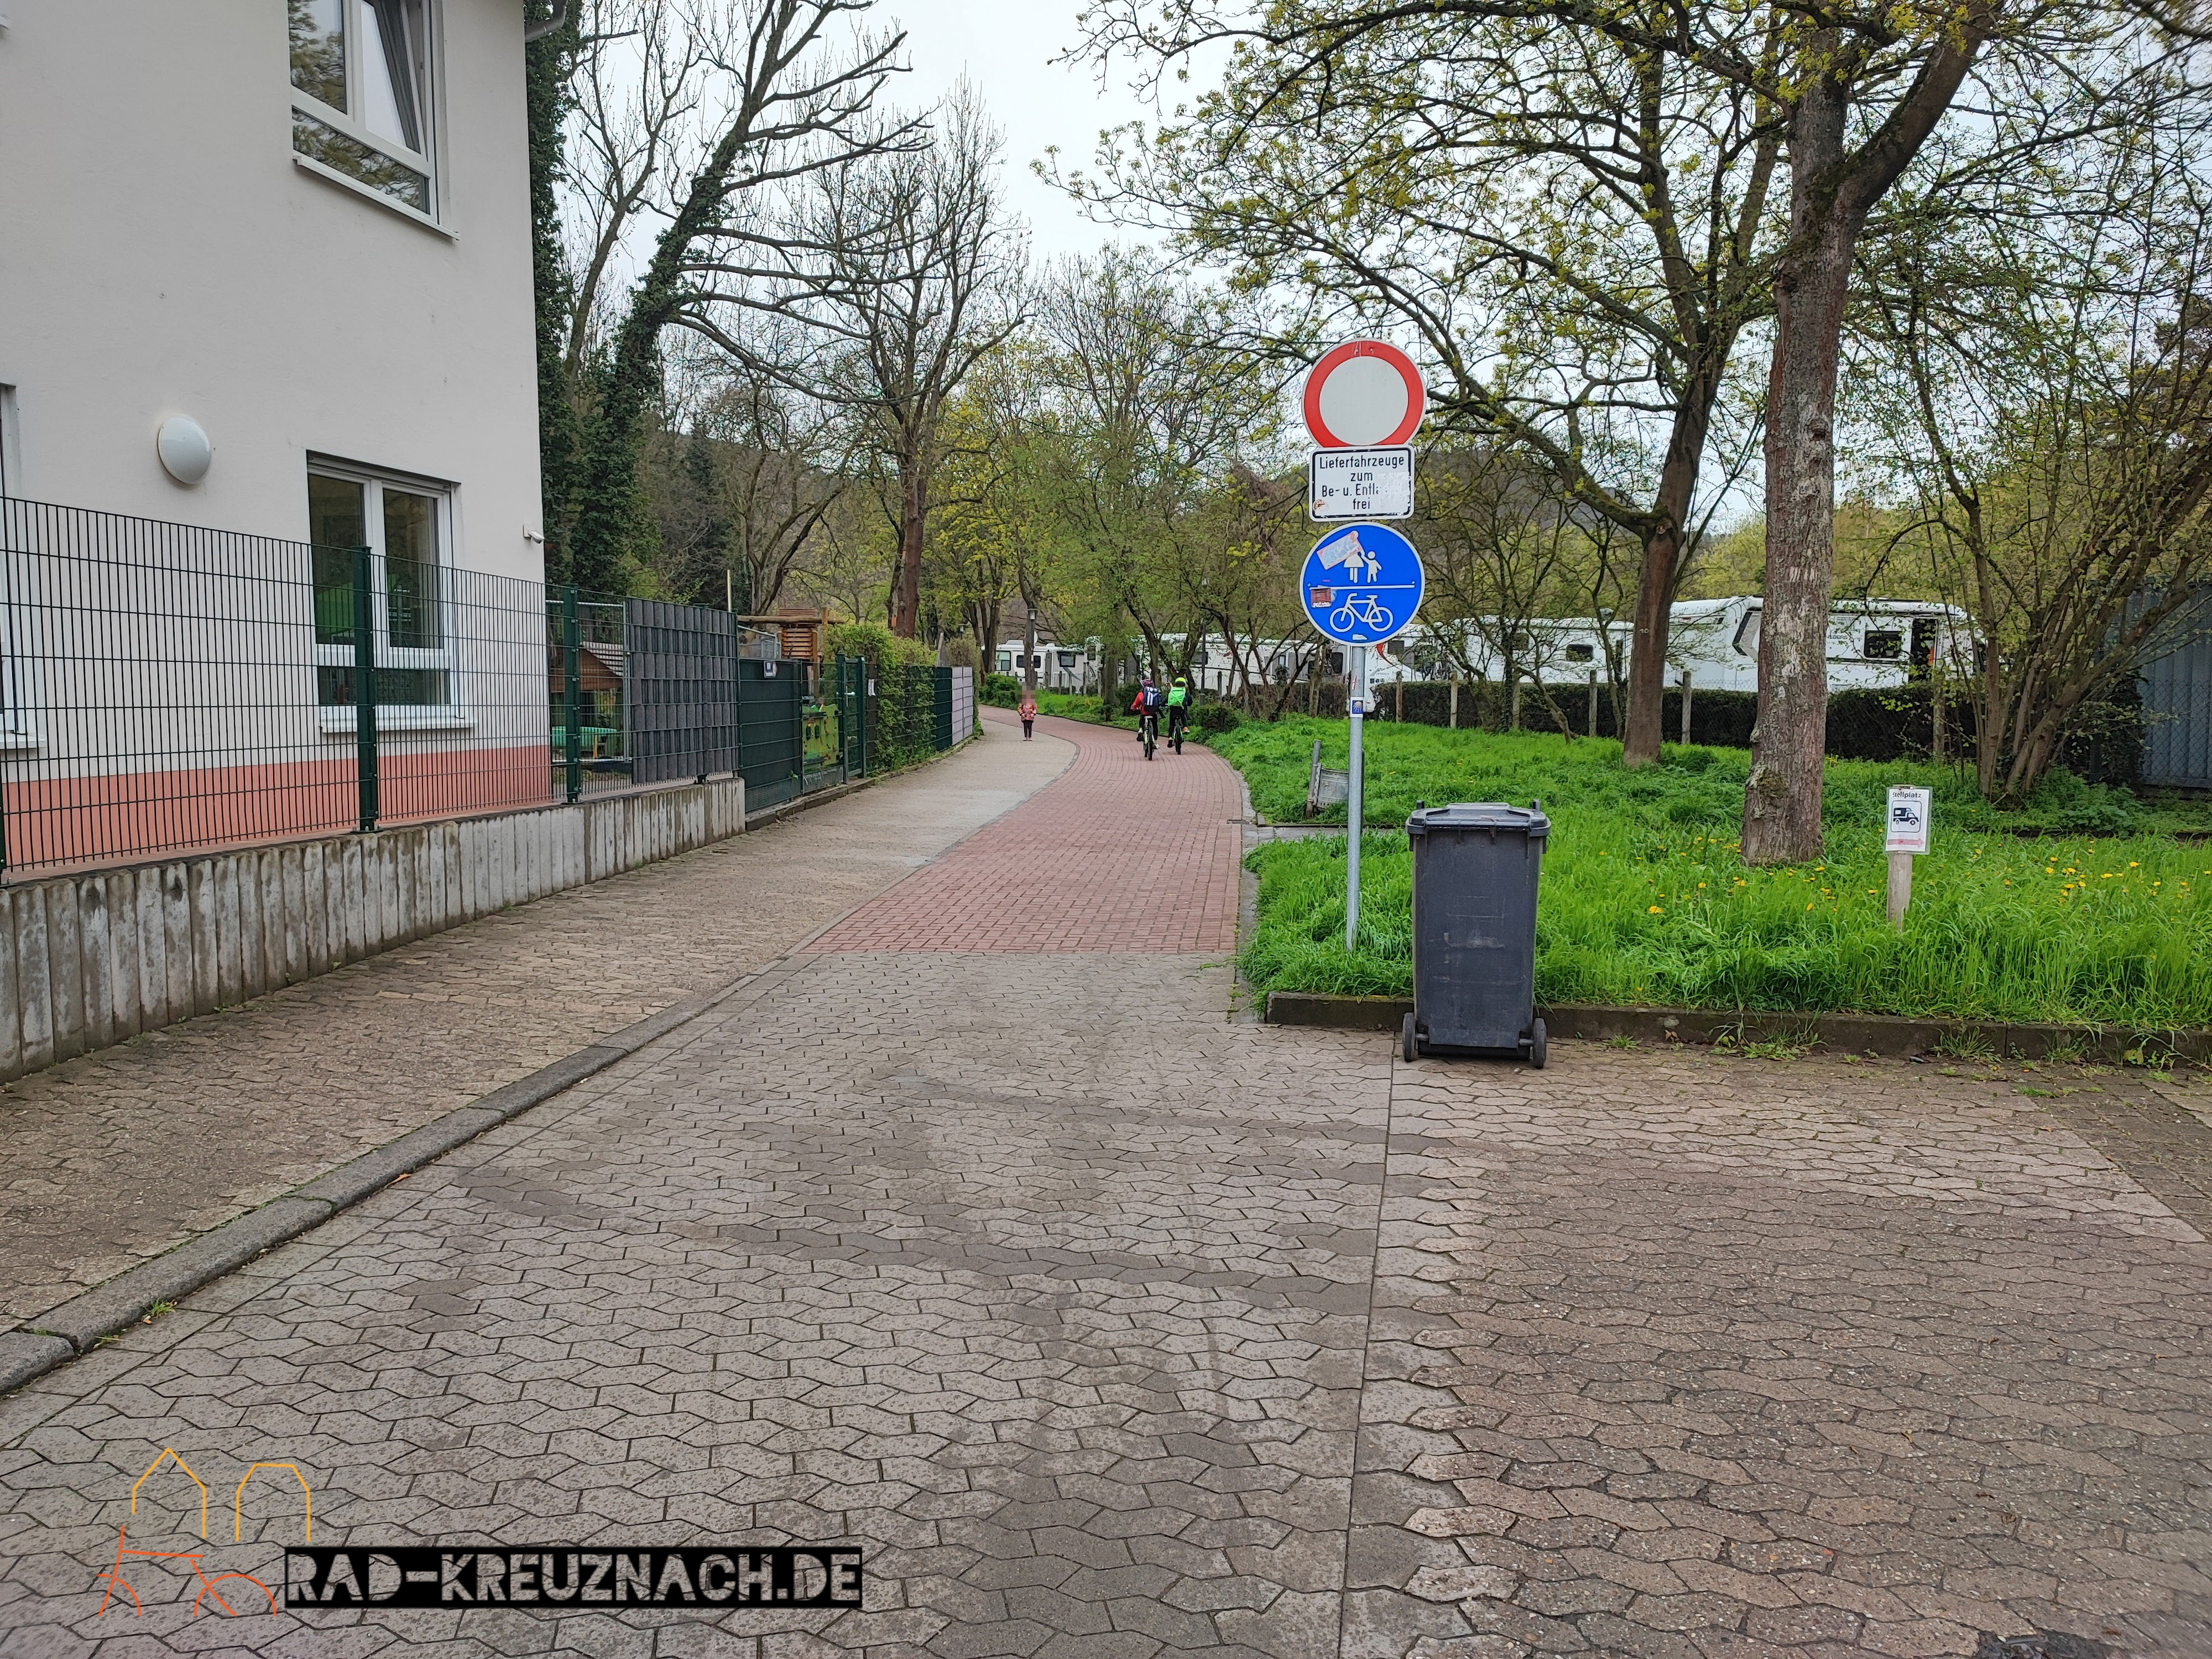 Gemeinsamer Fuß- und Radweg am Brauwerk. Rechts in rot gepflastert, links schmaler in grau gepflastert.